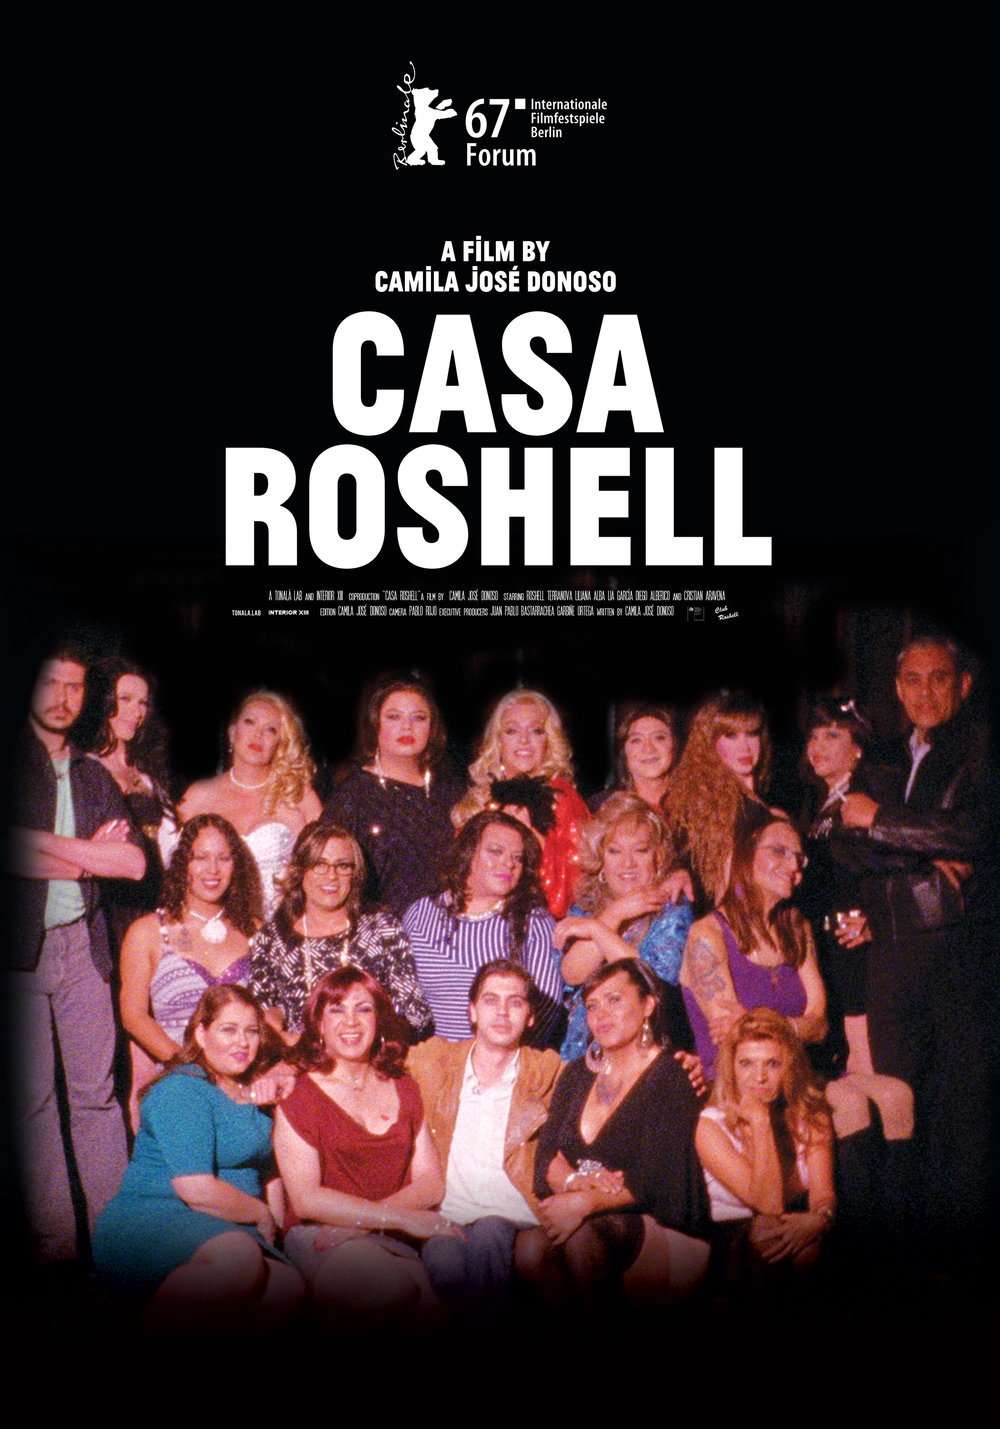  Casa Roshell (2017) Poster 